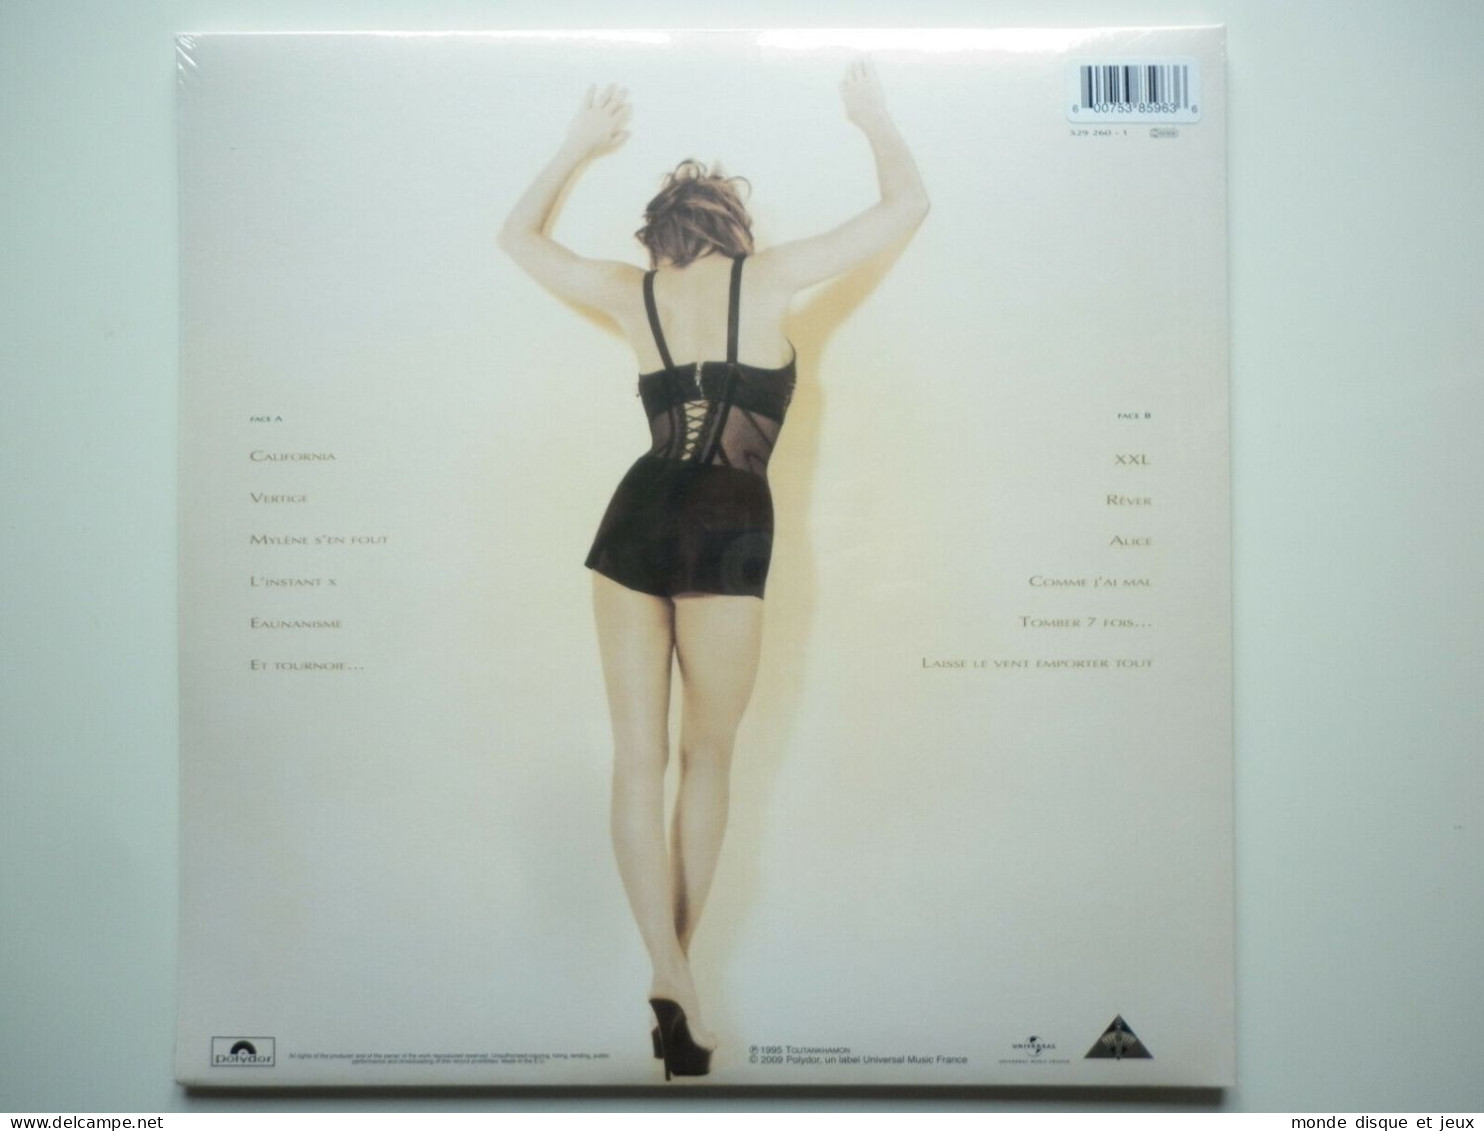 Mylene Farmer Album 33Tours Anamorphosée Exclusivité Vinyle Couleur Rouge Splatter - Autres - Musique Française